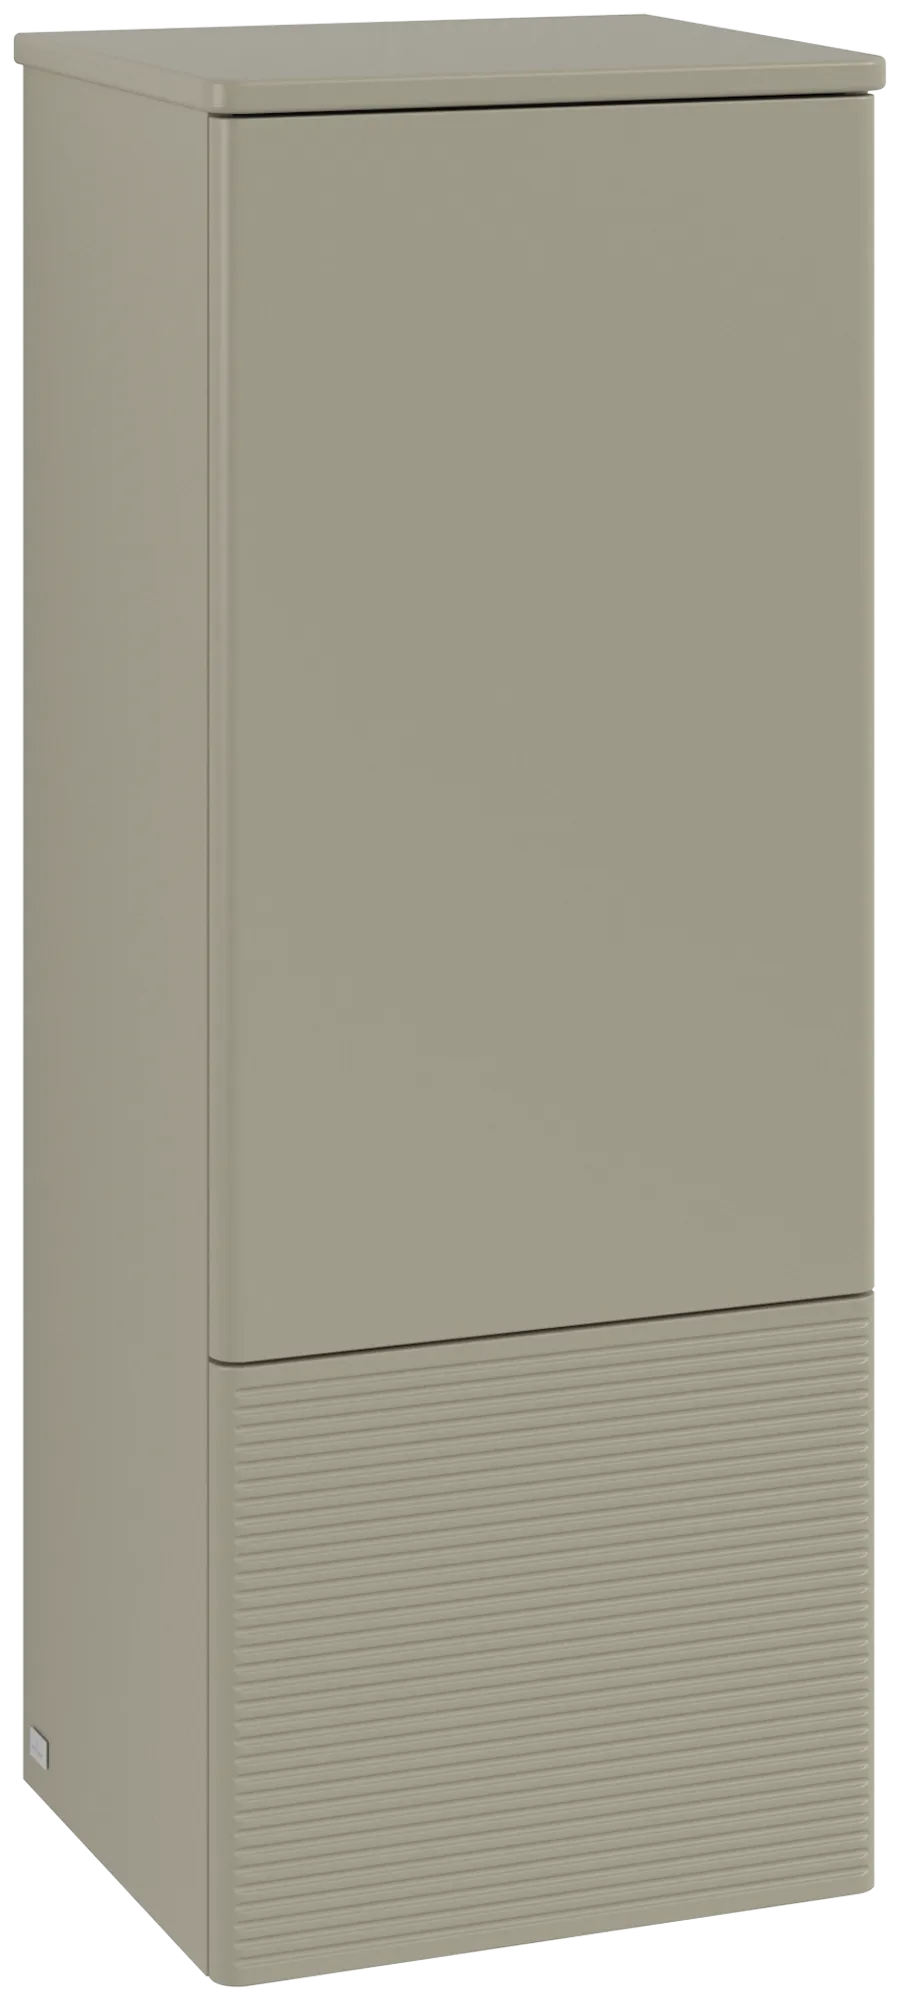 Bild von VILLEROY BOCH Antao Mittelschrank, 1 Tür, 414 x 1039 x 356 mm, Front mit Struktur, Stone Grey Matt Lacquer / Stone Grey Matt Lacquer #K44100HK